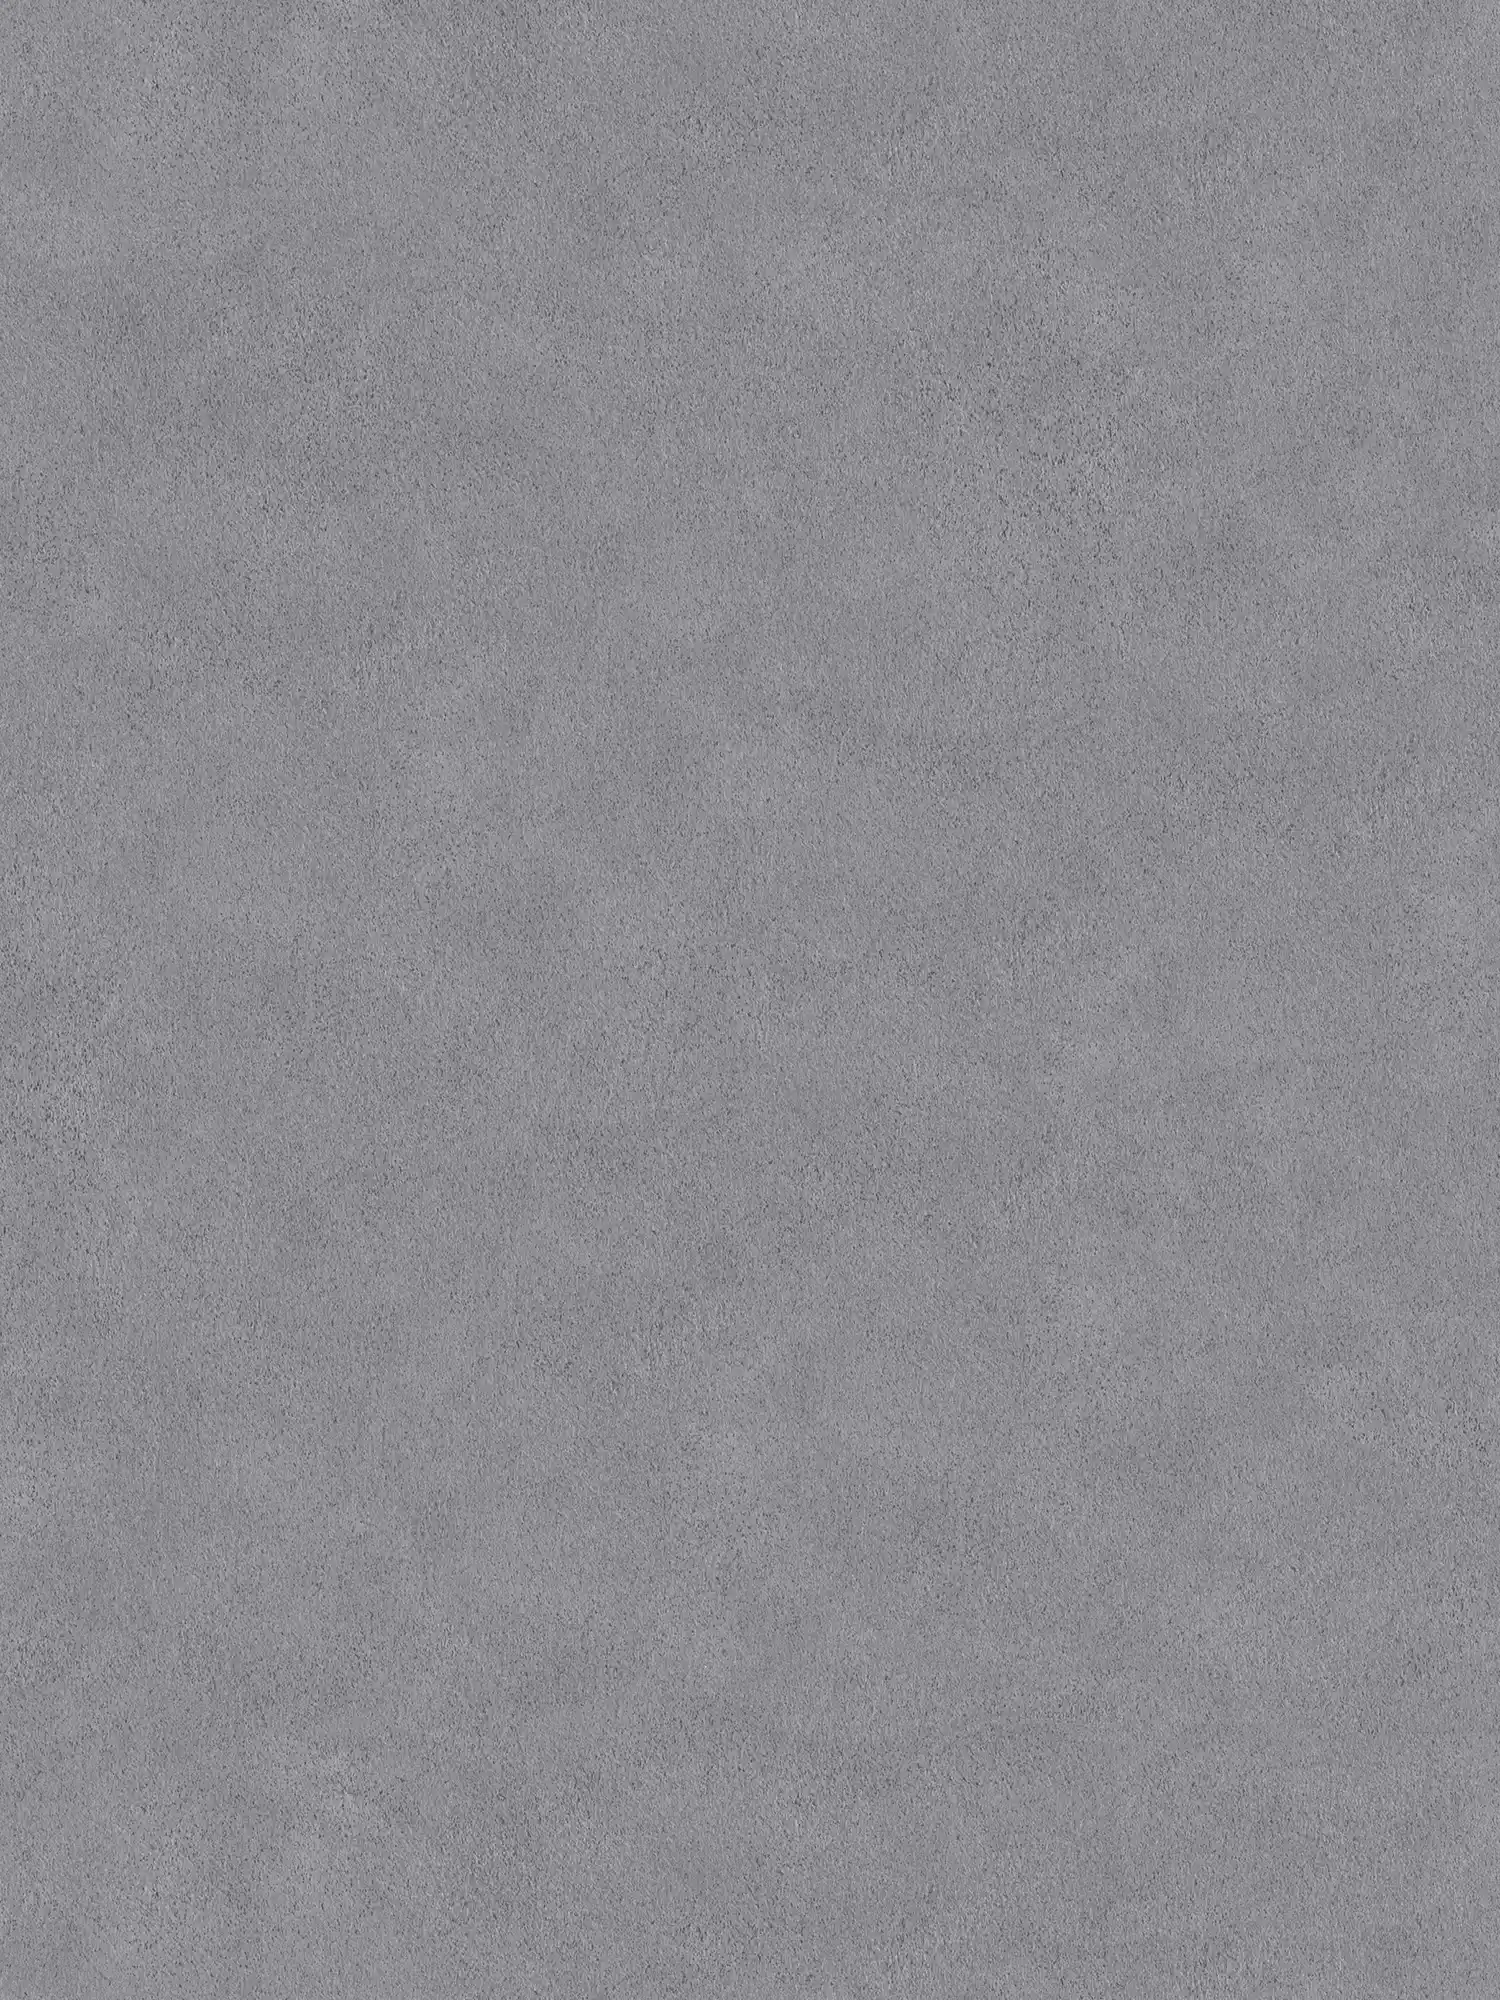 Papel pintado no tejido gris liso moteado con aspecto de piedra
